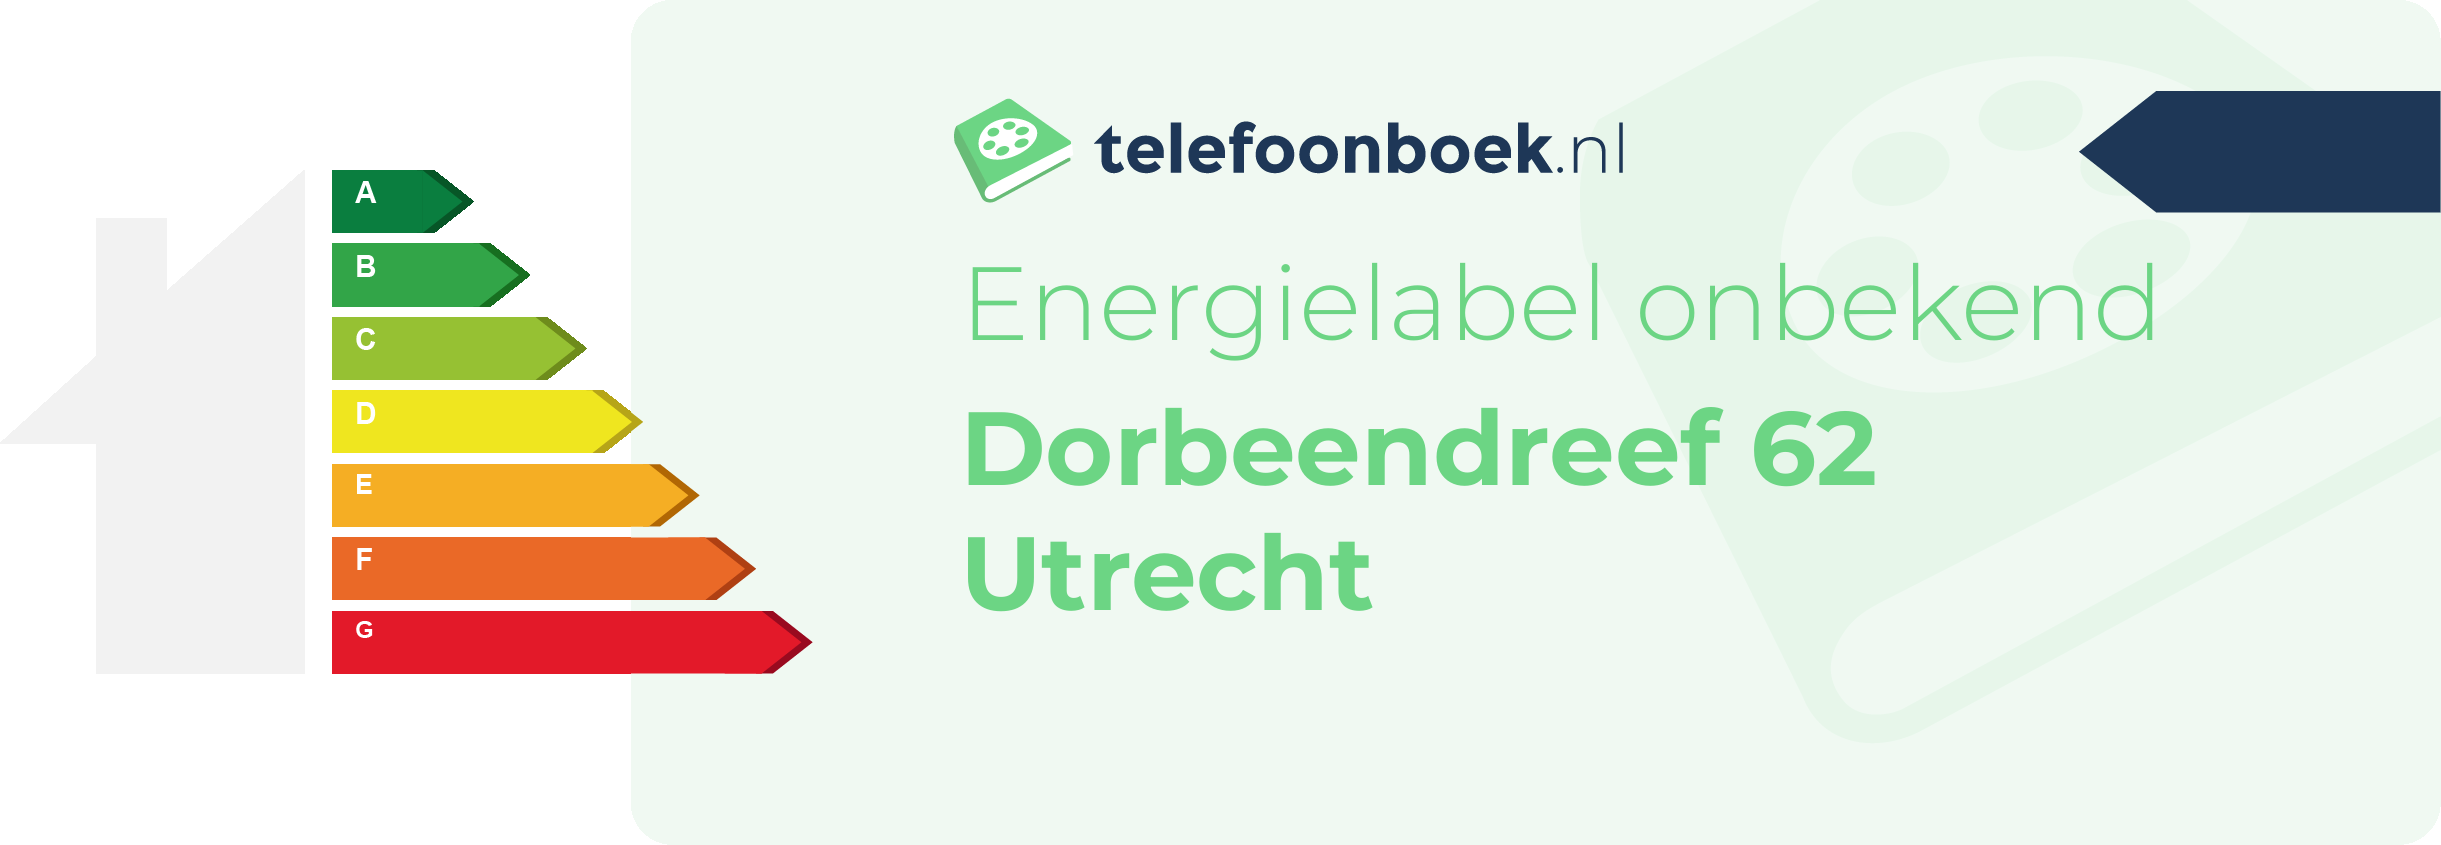 Energielabel Dorbeendreef 62 Utrecht